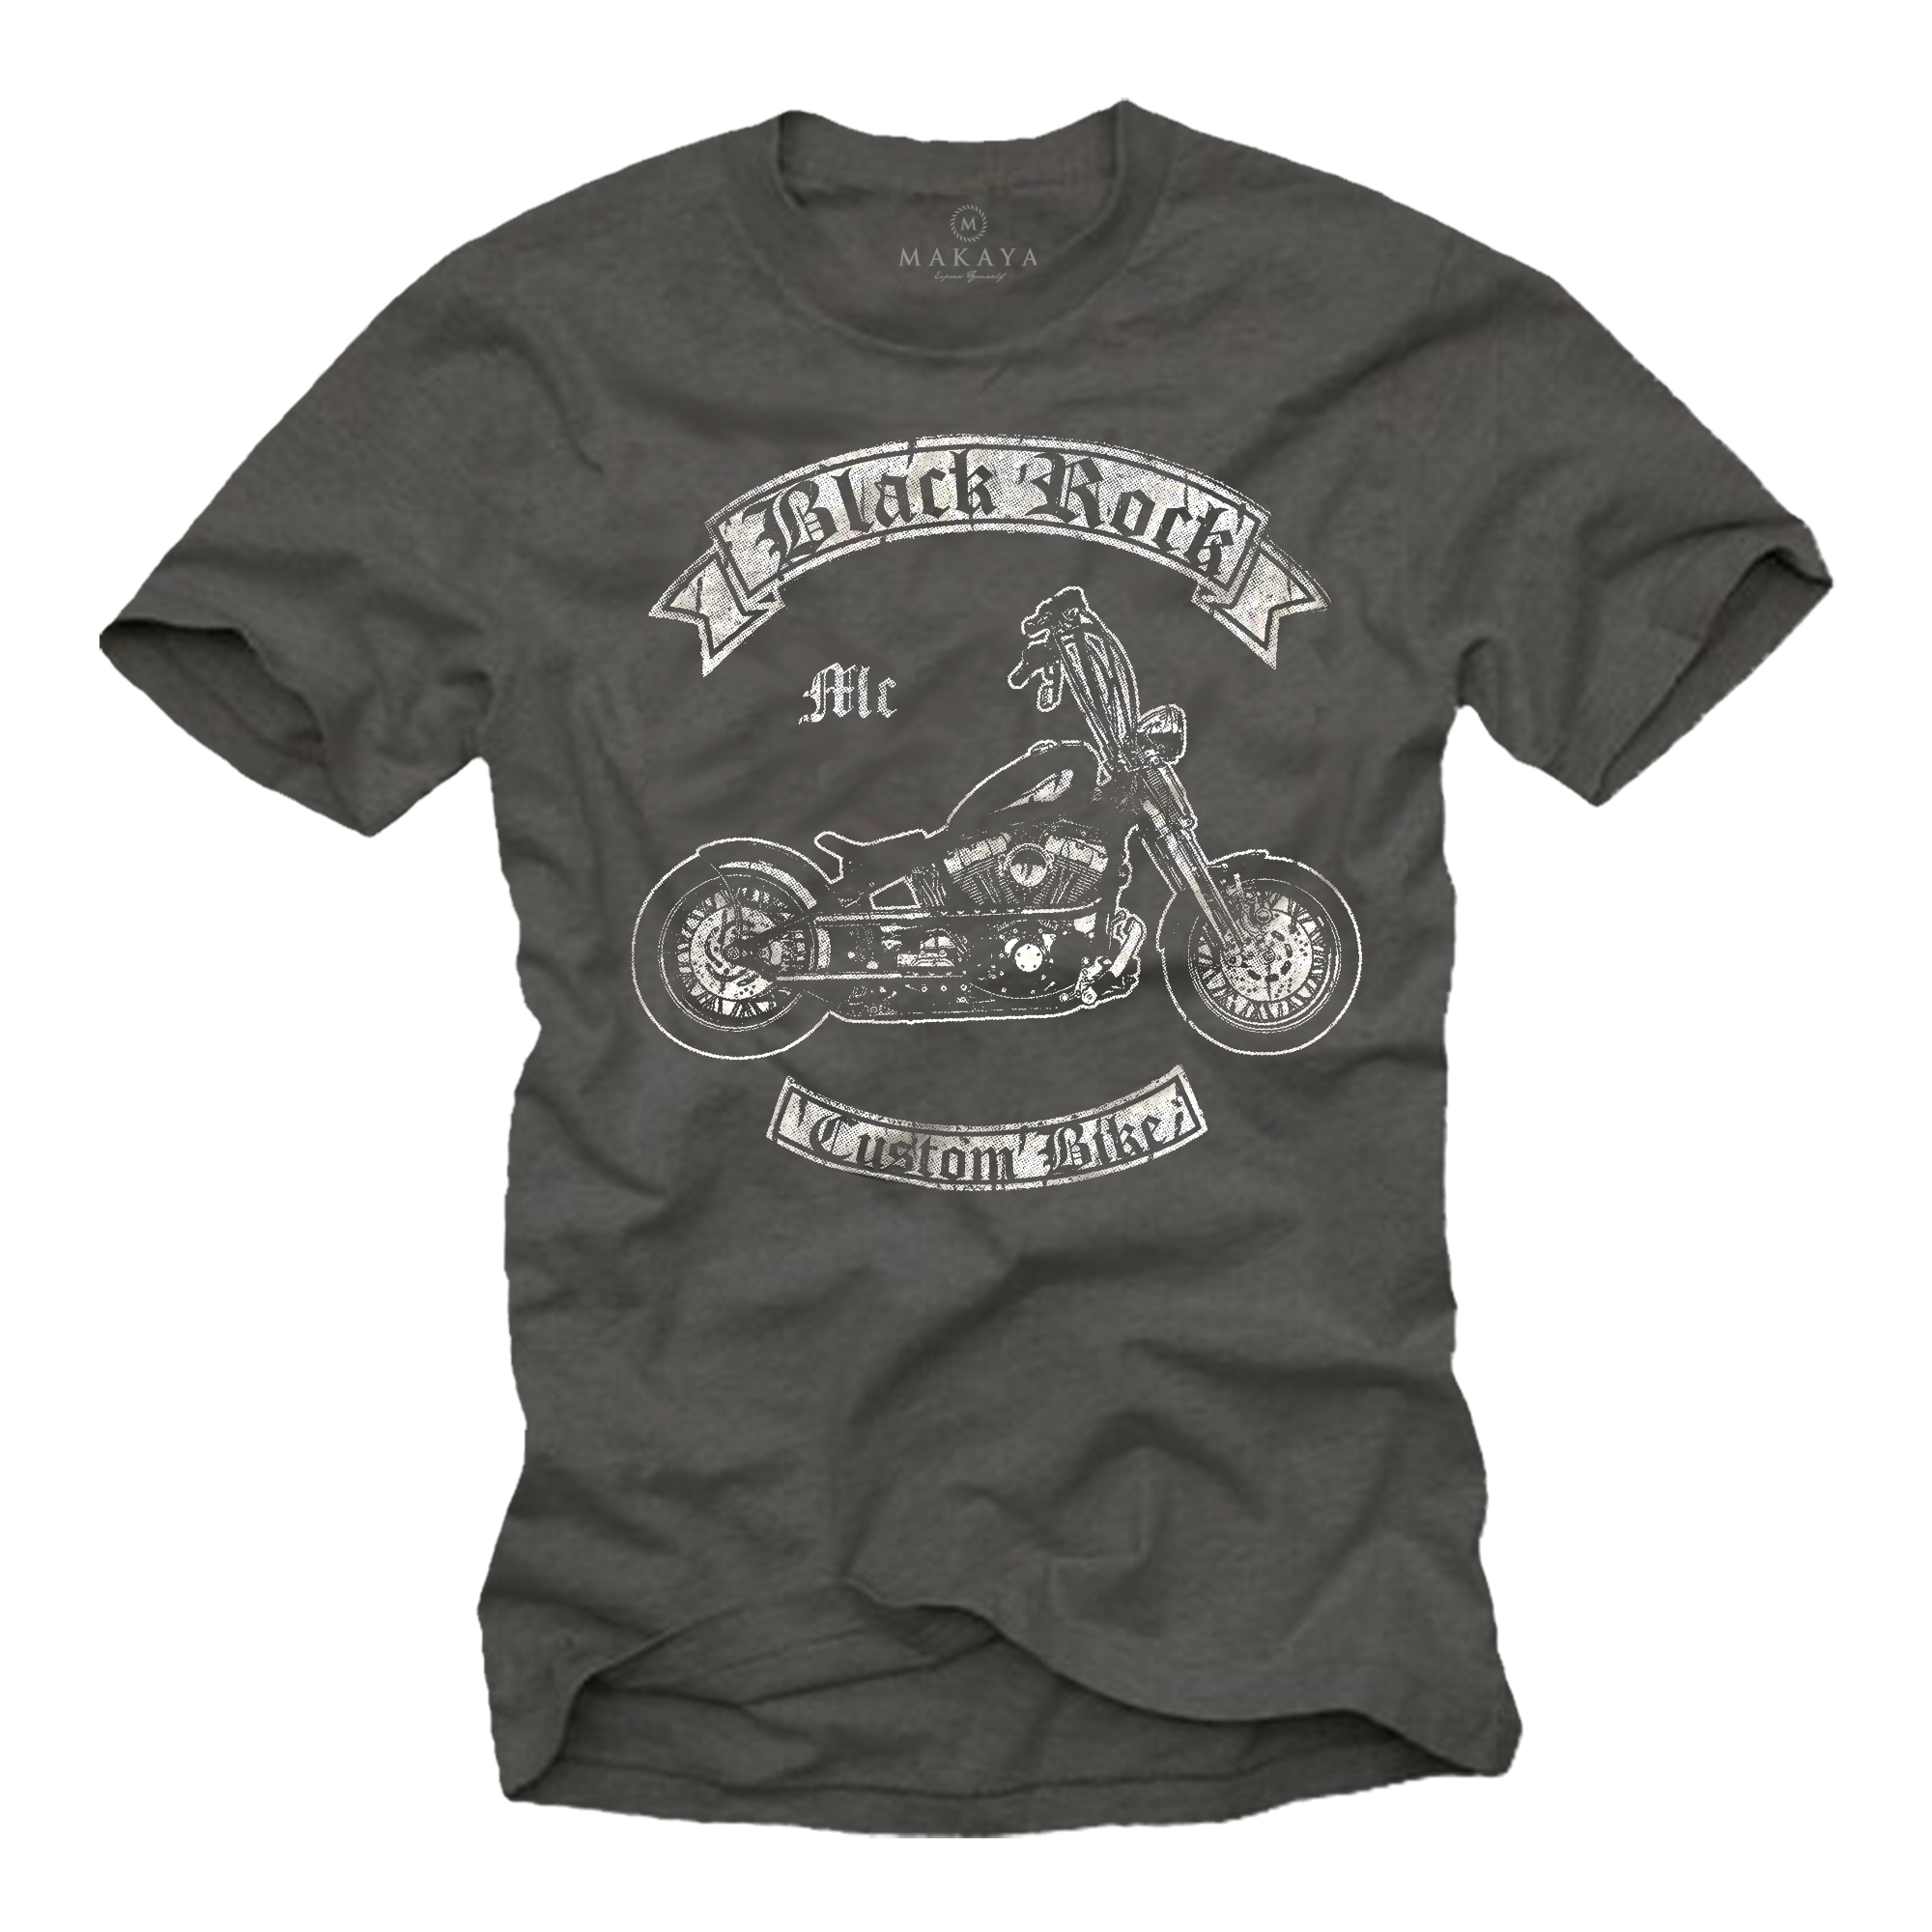 Cooles Biker T-Shirt Herren - Black Rock Chopper Motiv